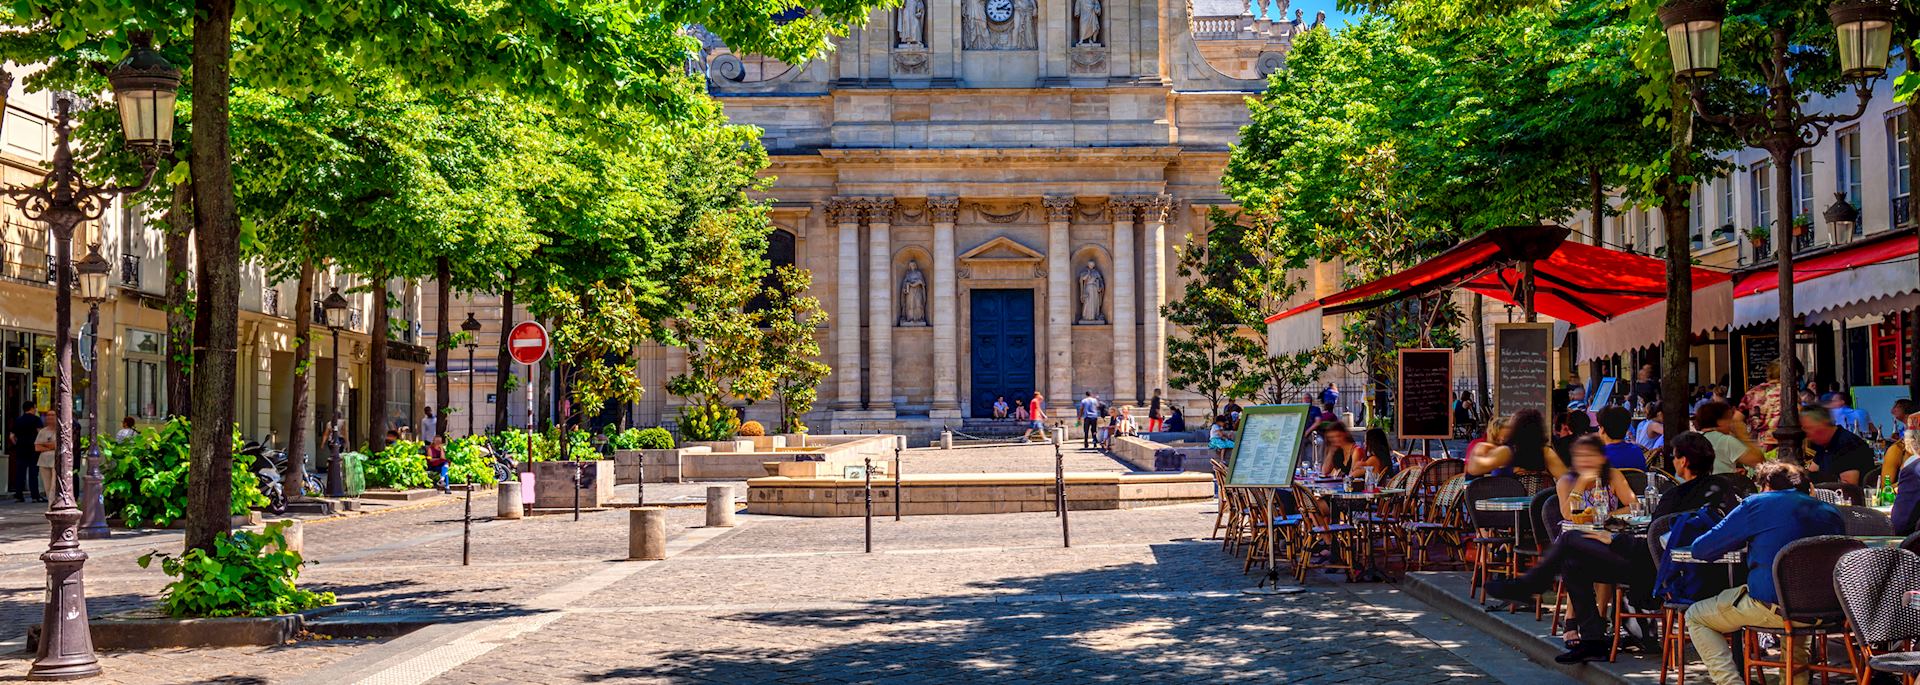 The Sorbonne, Paris